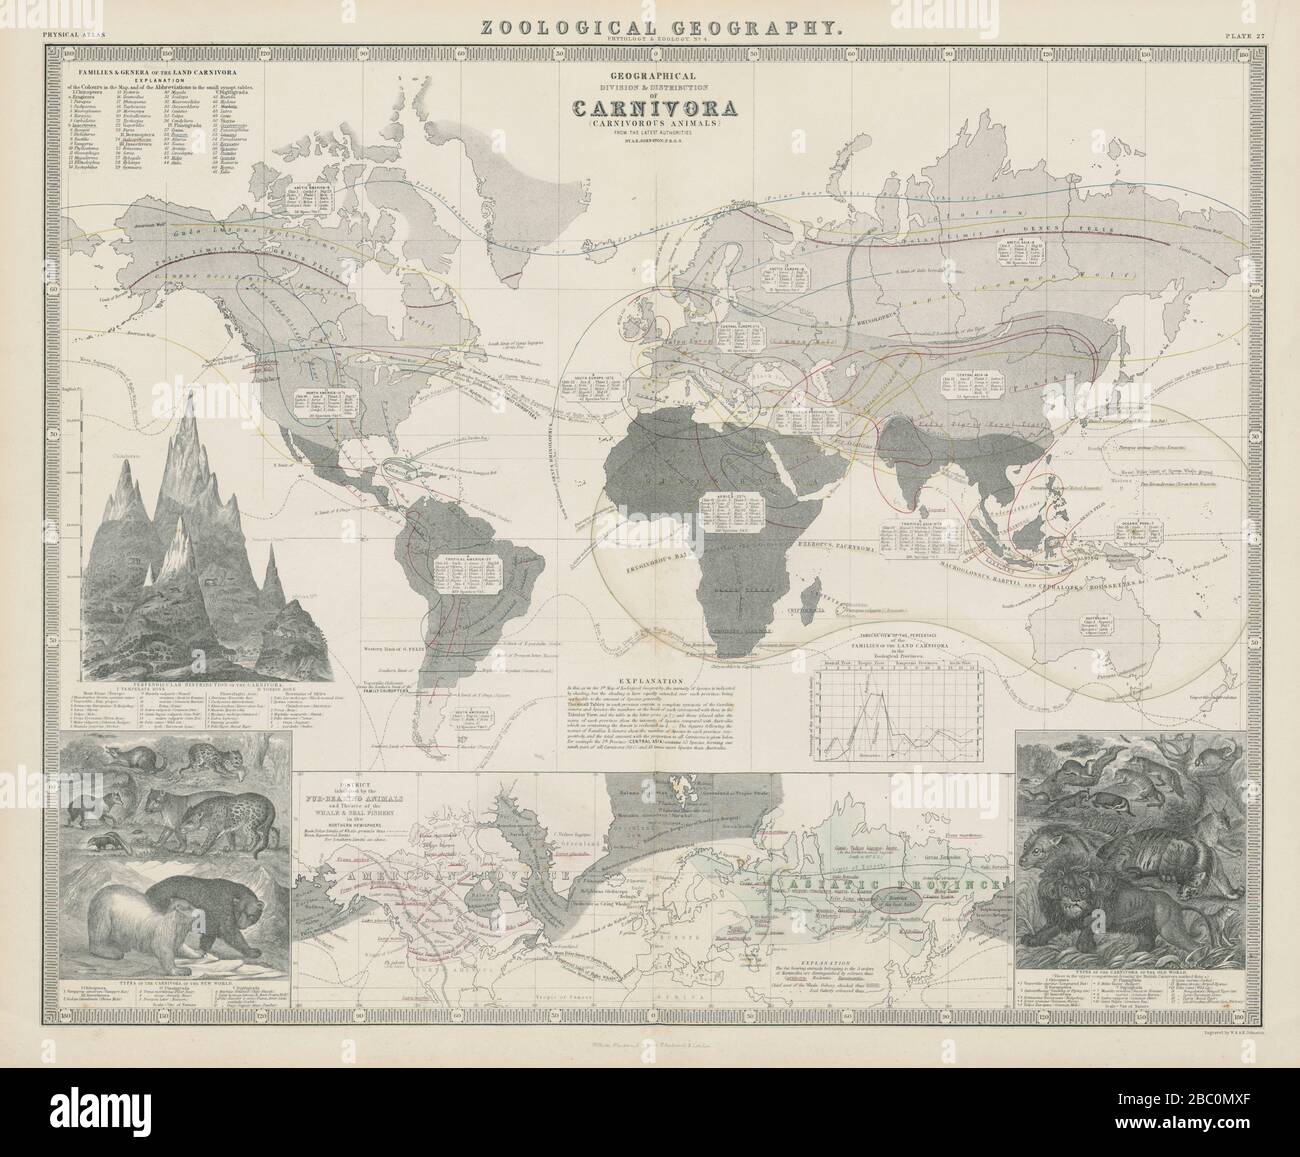 Zoologische Geographie. Carnivora (fleischfressende Tiere) Verteilung 1856 Karte Stockfoto